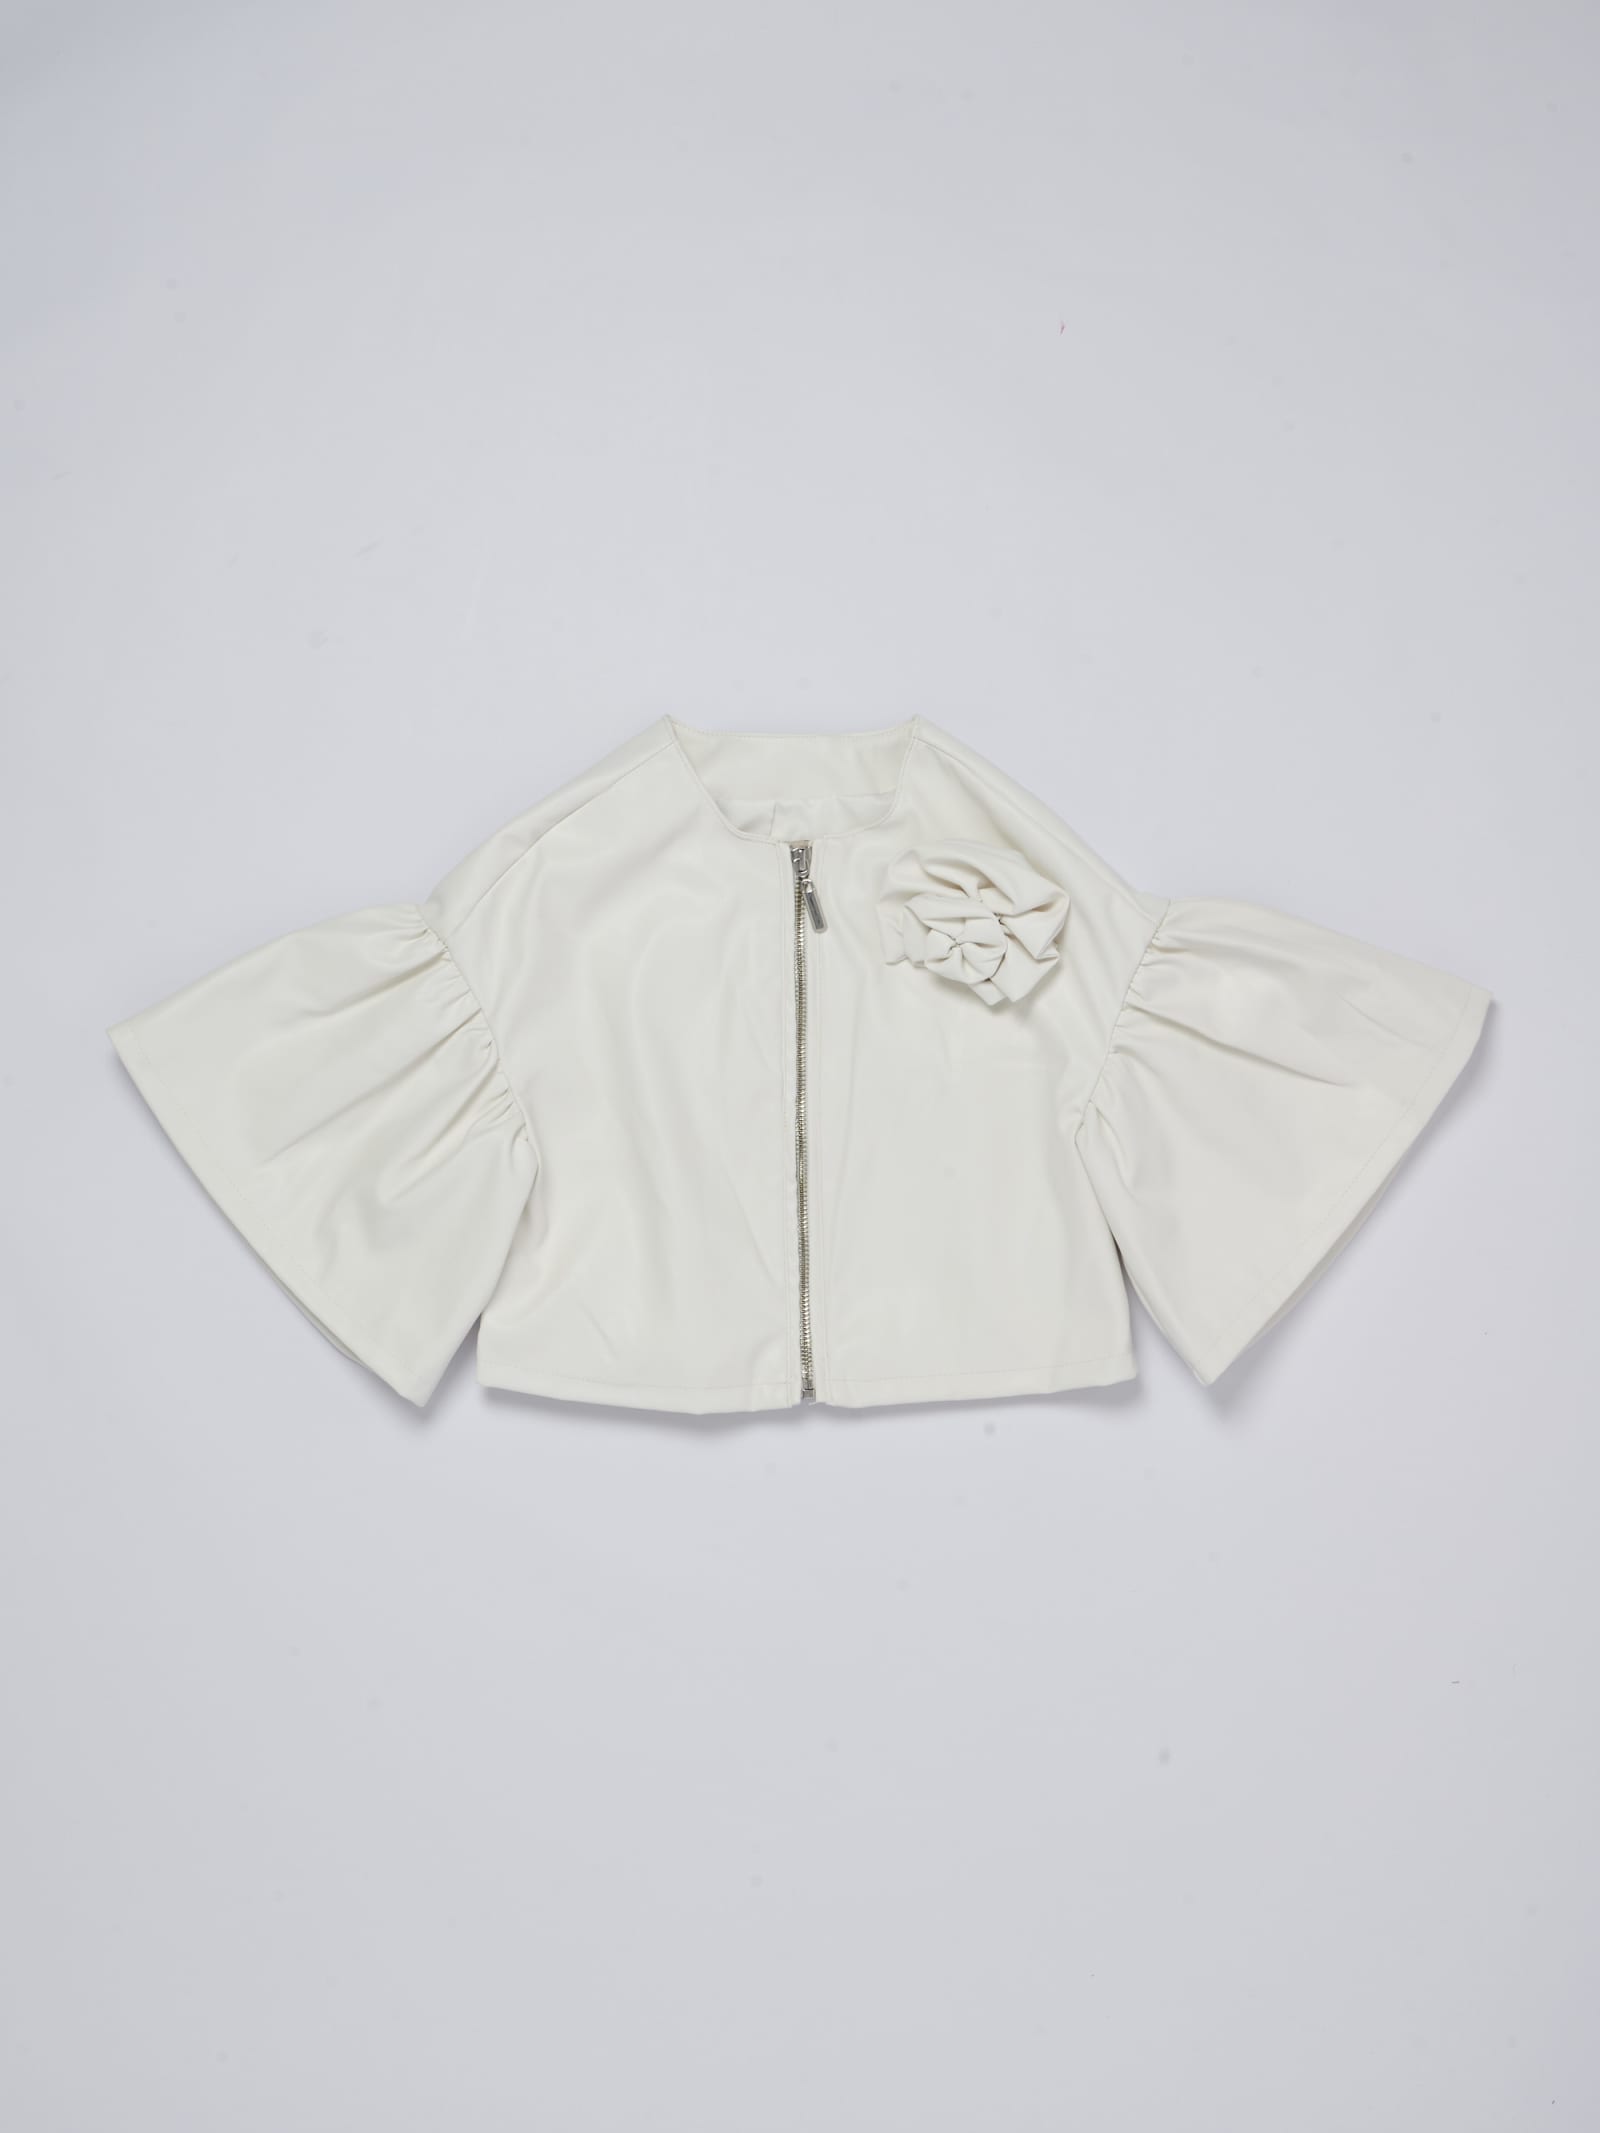 Twinset Kids' Jacket Jacket In Bianco